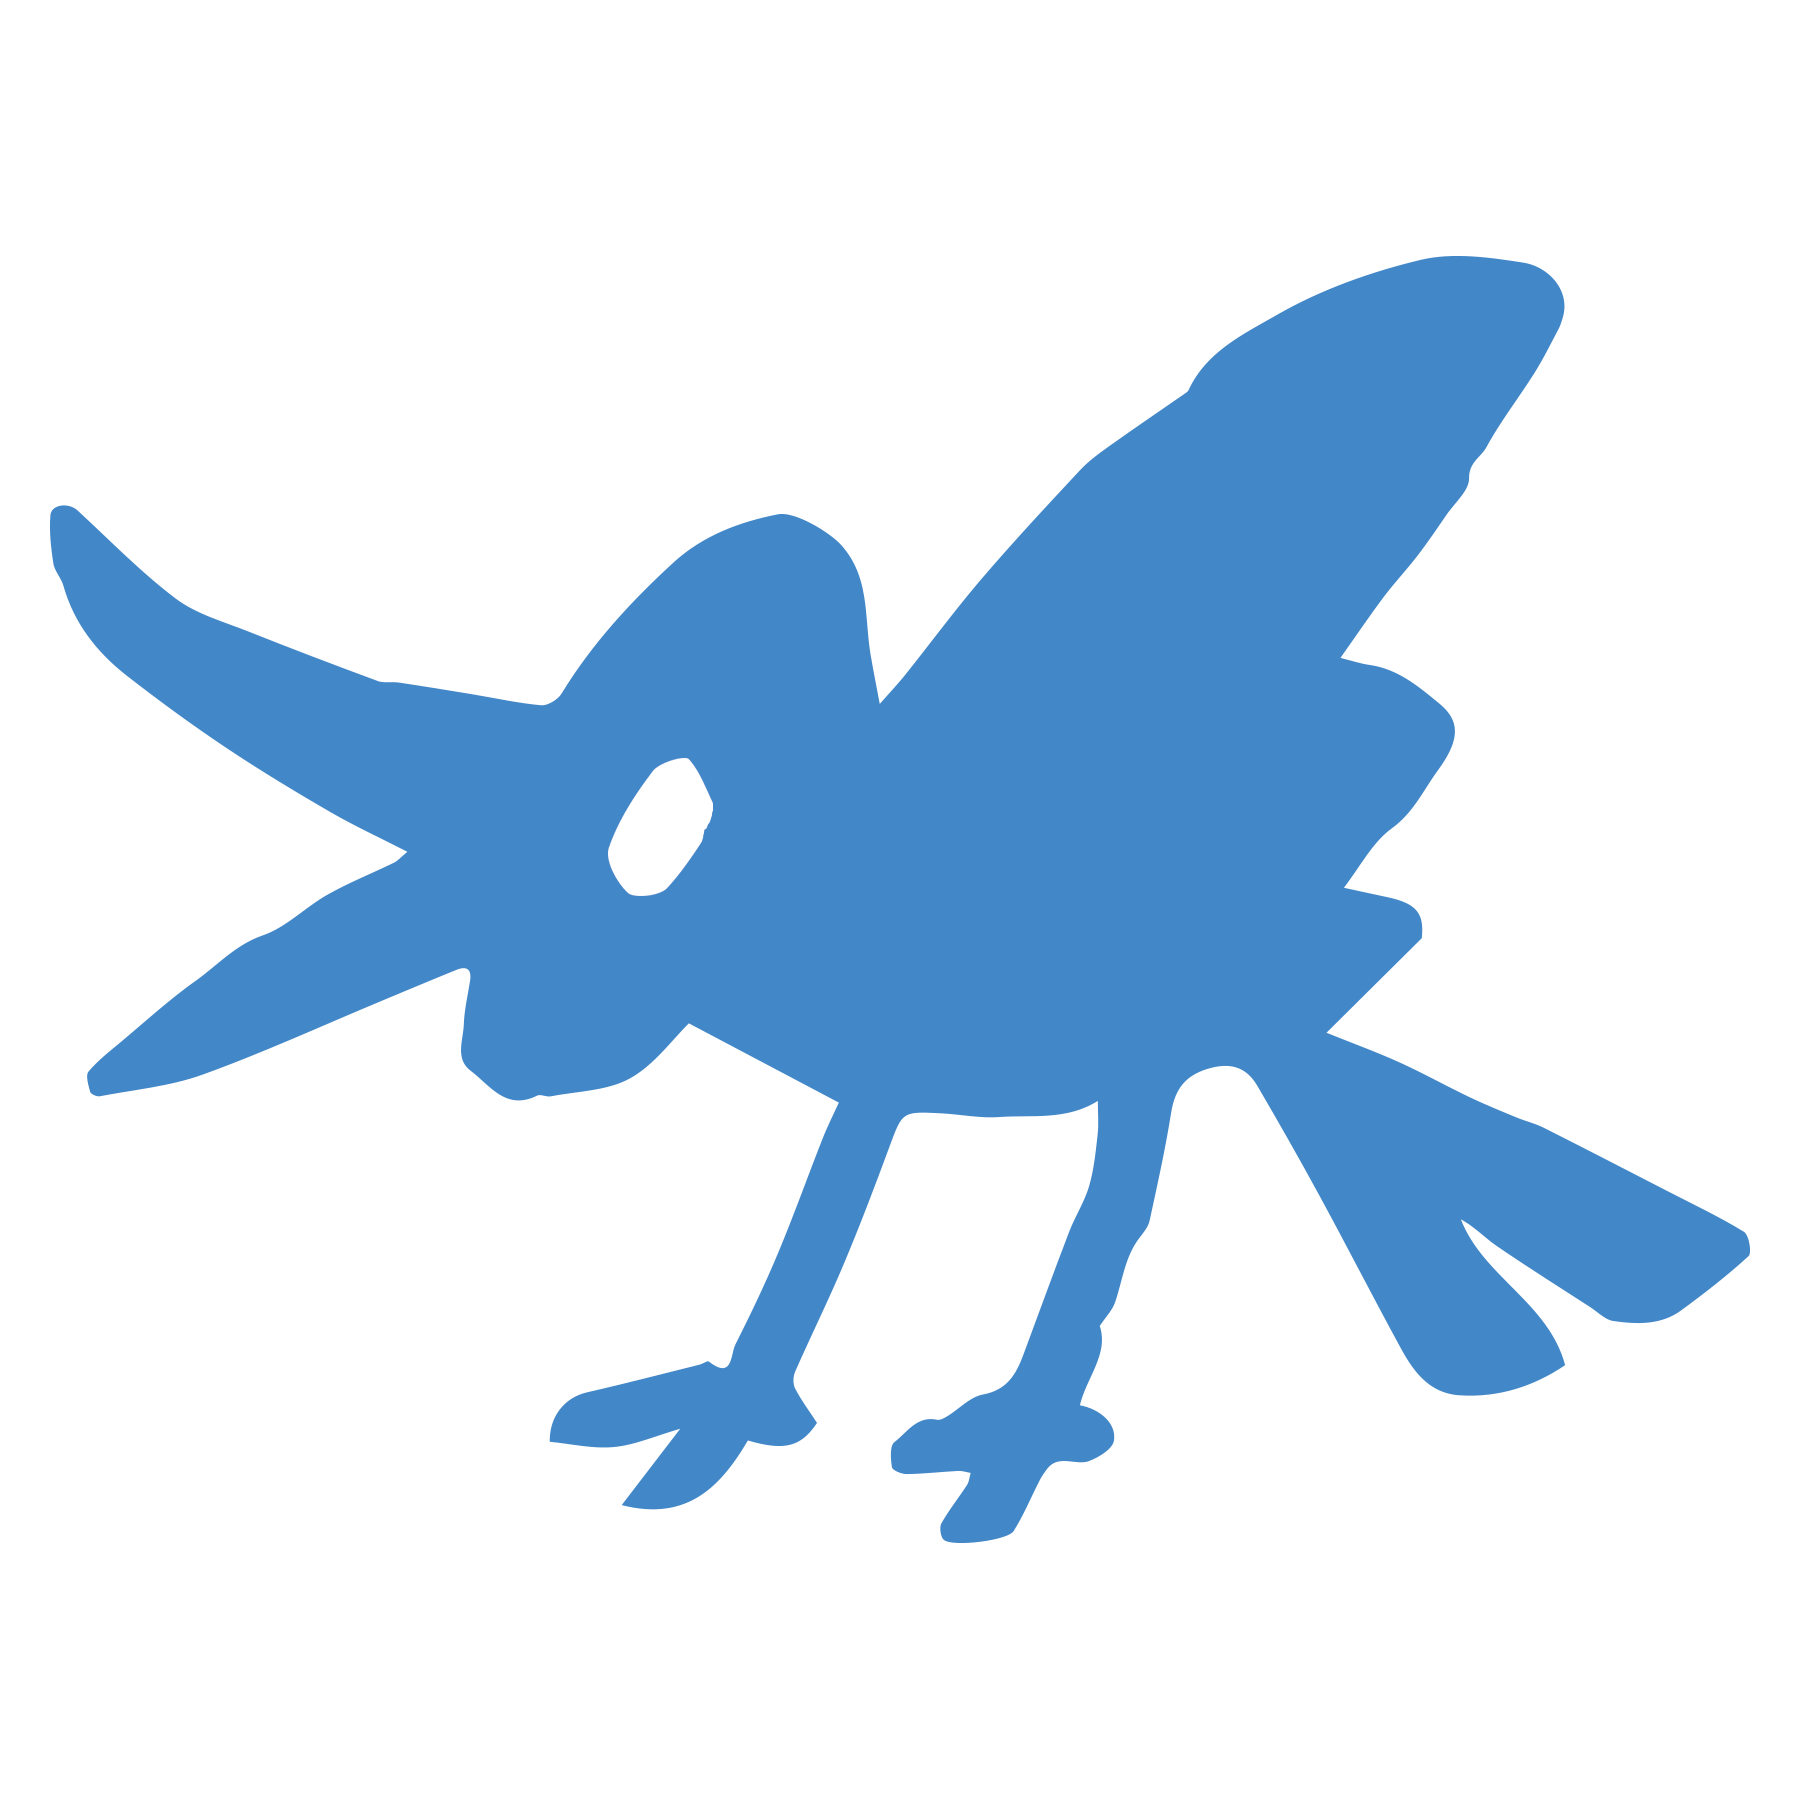 Twitterっぽい青い鳥のイラスト ゆるくてかわいい無料イラスト素材屋